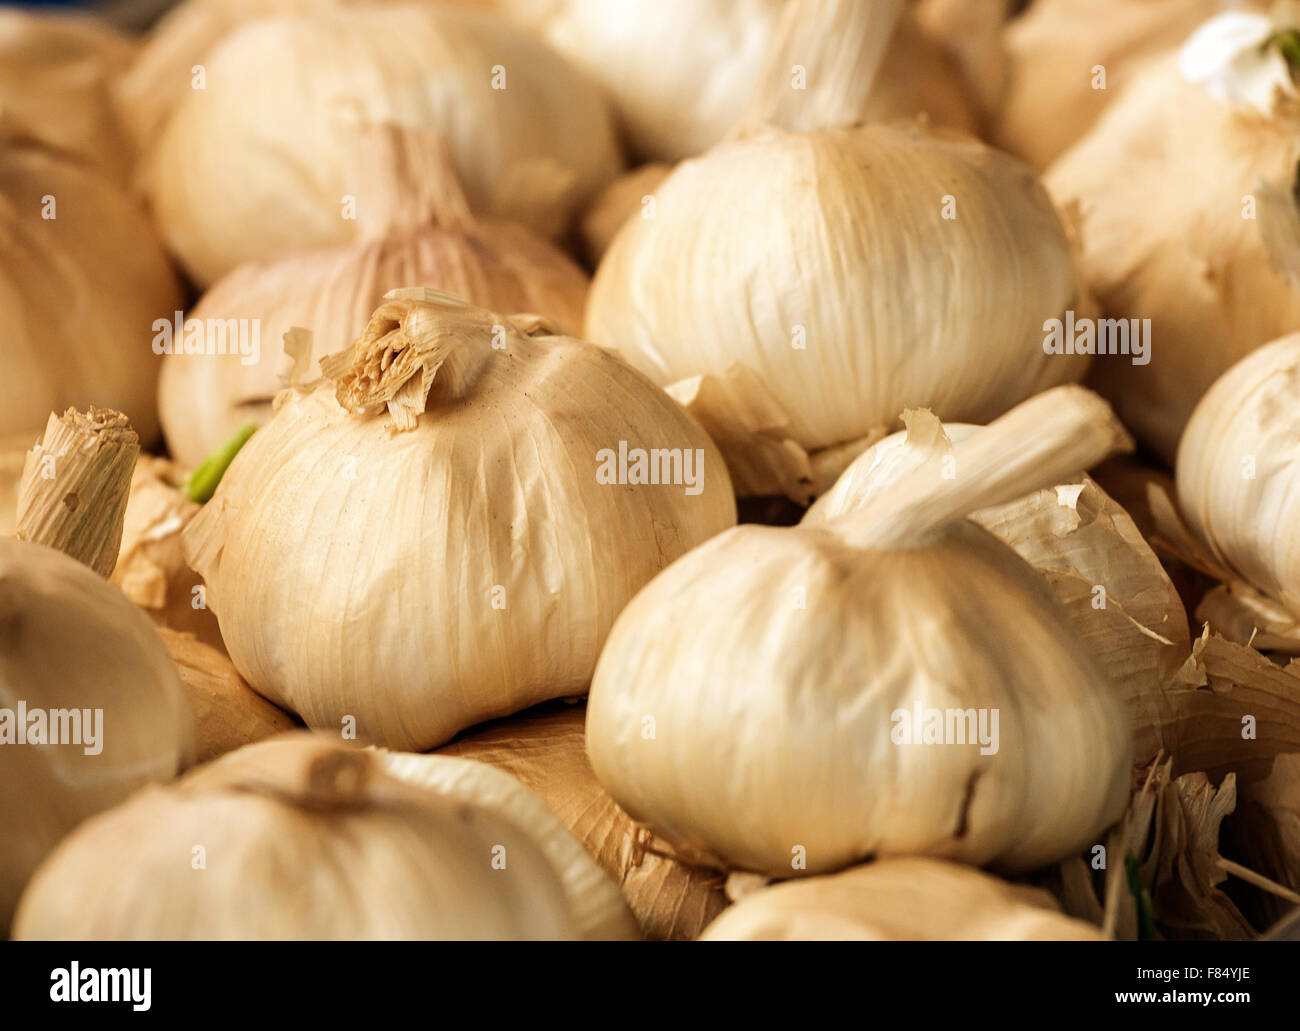 Geräuchertem Knoblauch Zwiebeln eine beliebte aromatische Zutat im modernen Bistro-Rezepte. Stockfoto